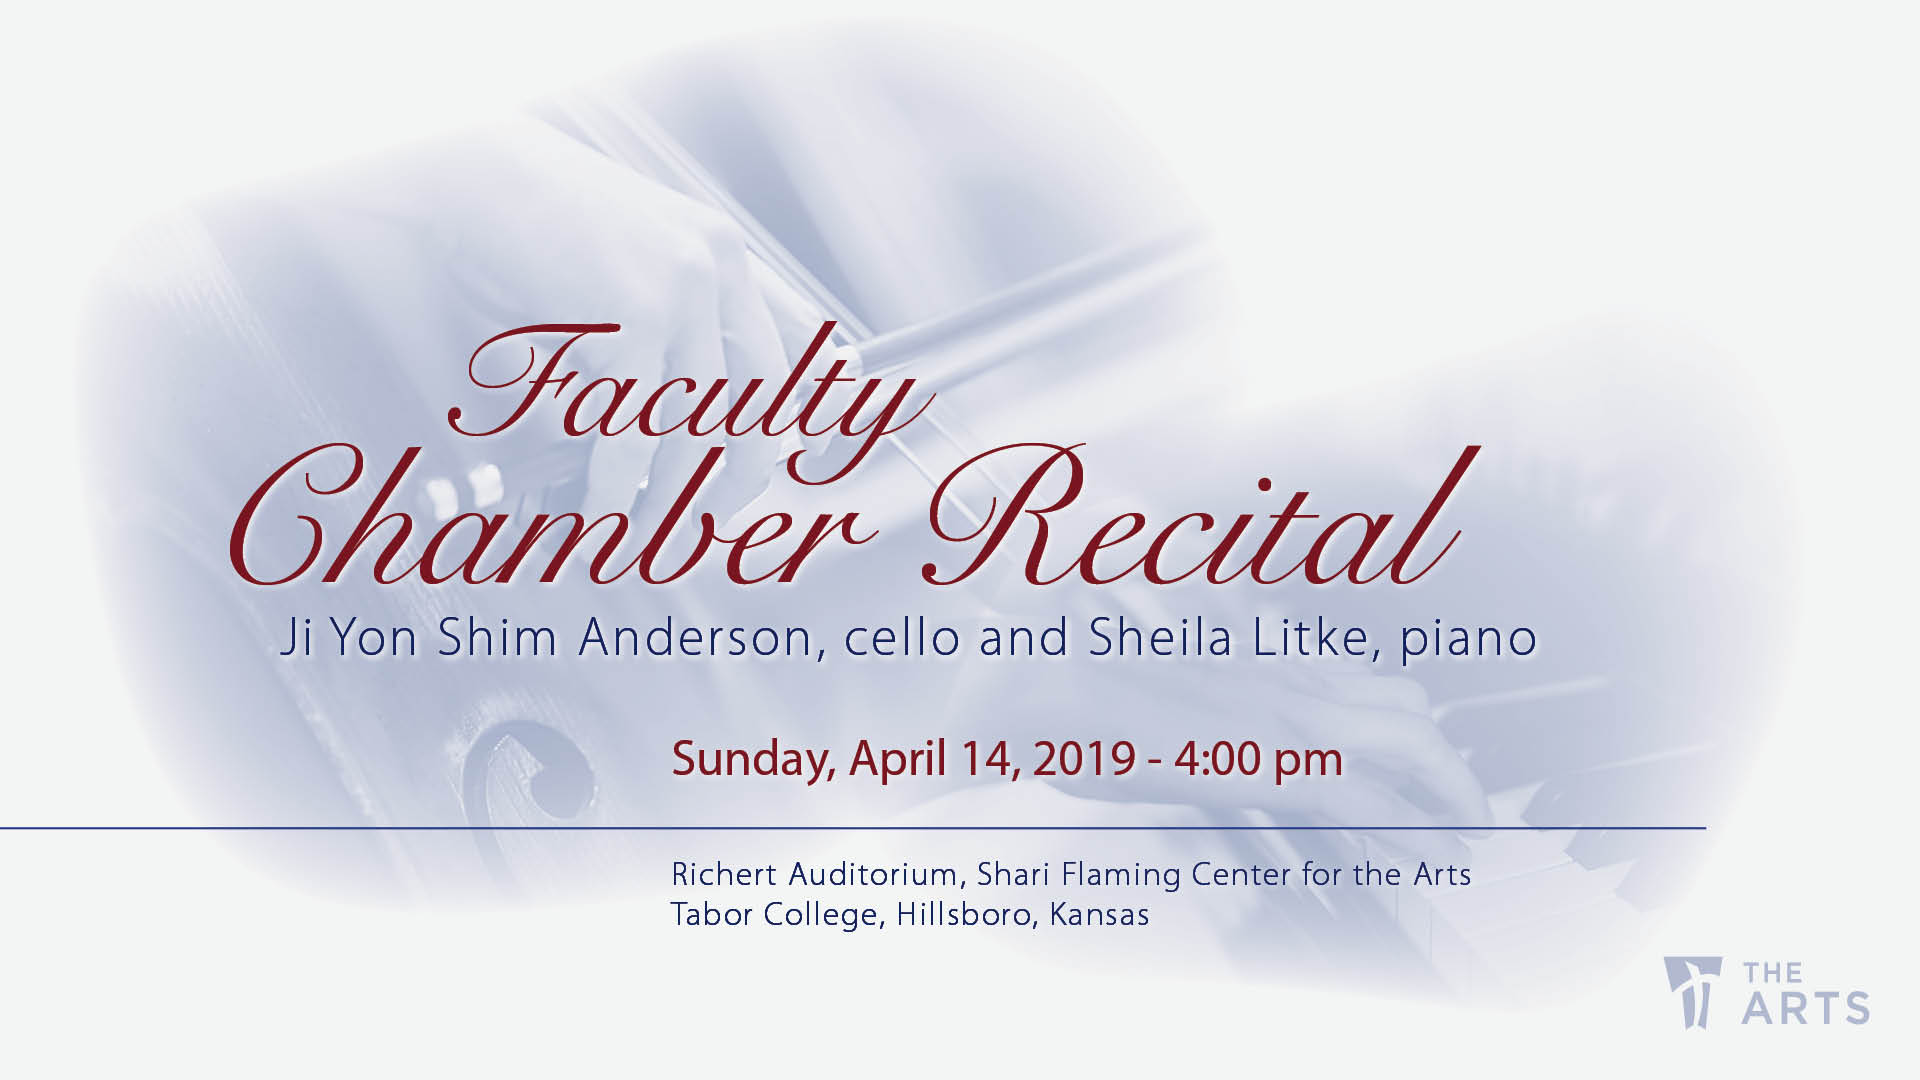 Chamber Recital concert poster